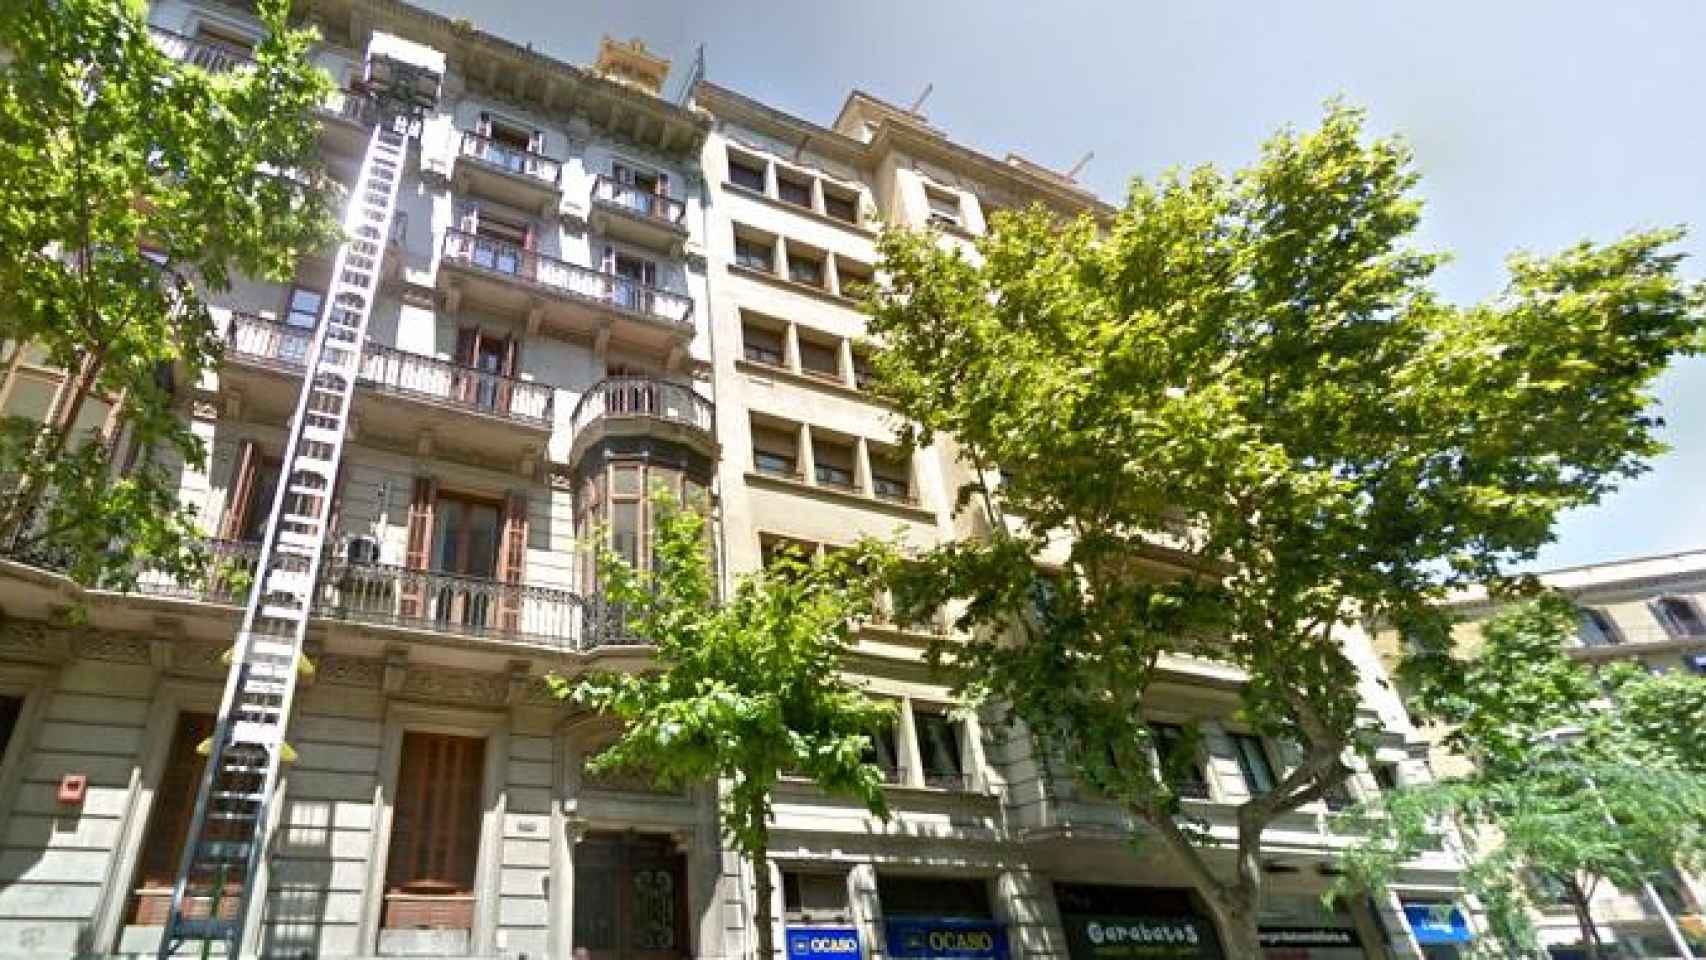 Home Sweet Home Invest, de compraventa de inmuebles, una de las empresas que se exilia de Cataluña